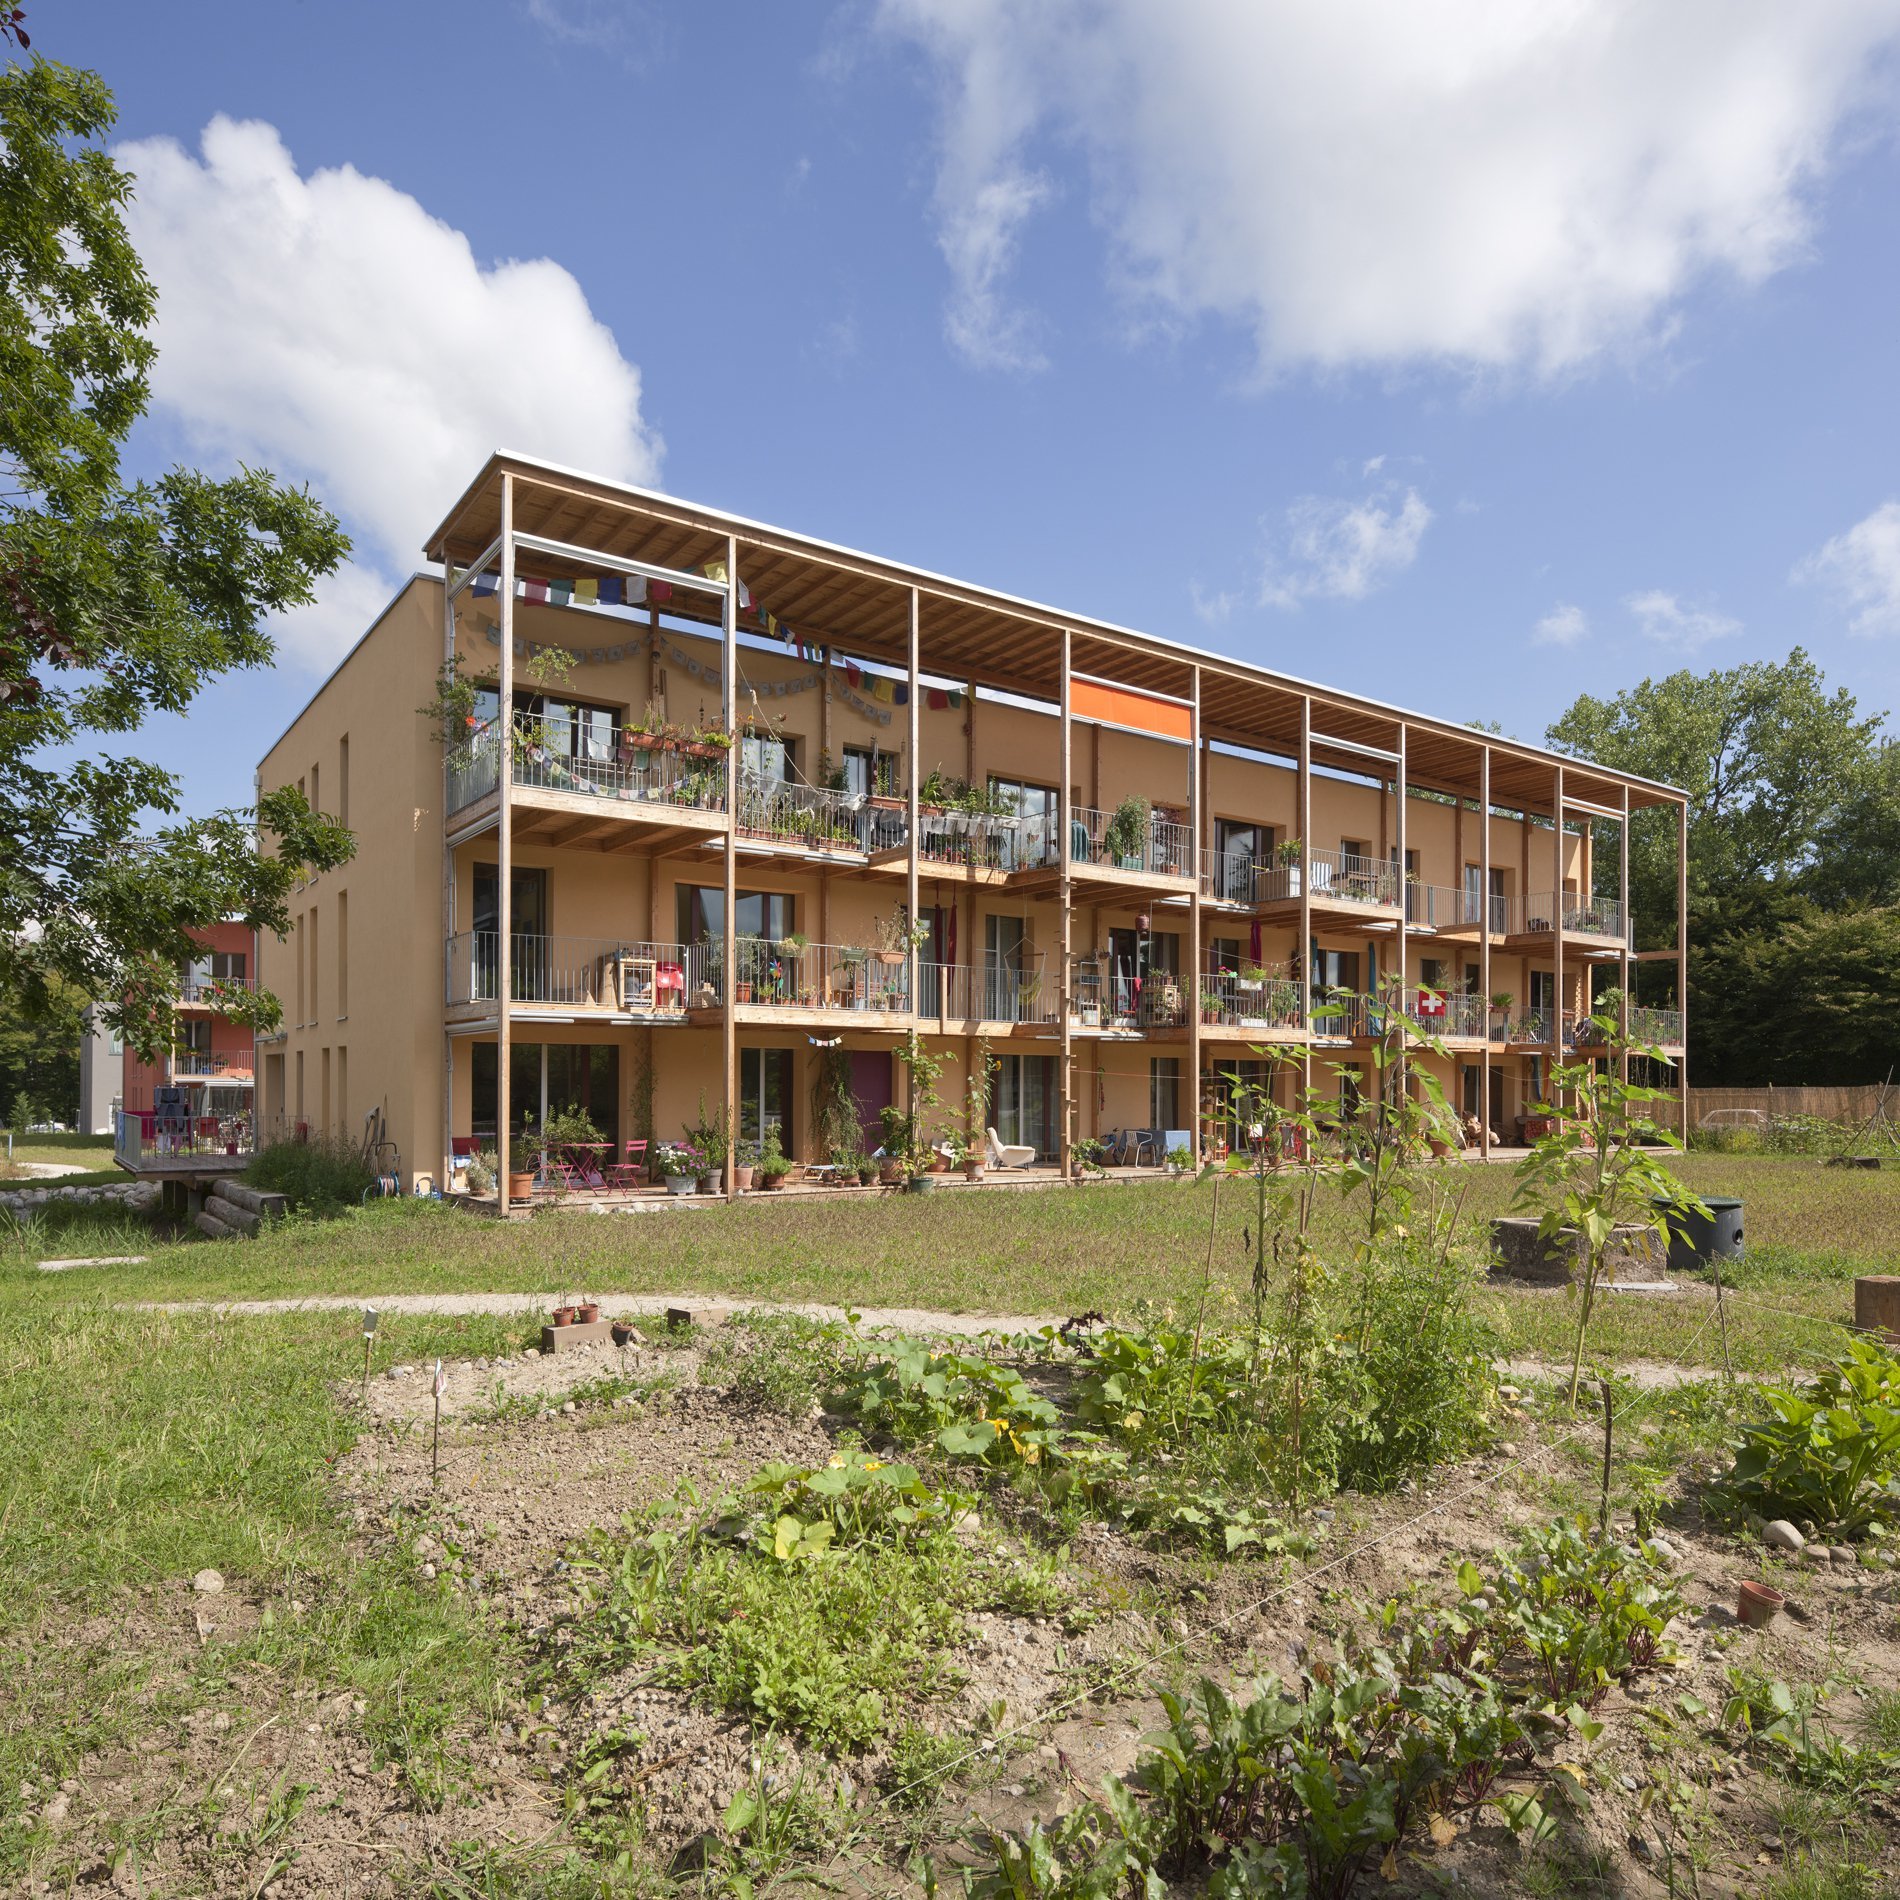 Les coopératives d’habitation, à l’instar de cet immeuble participatif à Cressy, se multiplient dans les cantons de Vaud, Neuchâtel et Genève. Au bout du lac, le canton cautionne jusqu’à 95% du coût de l’immeuble.